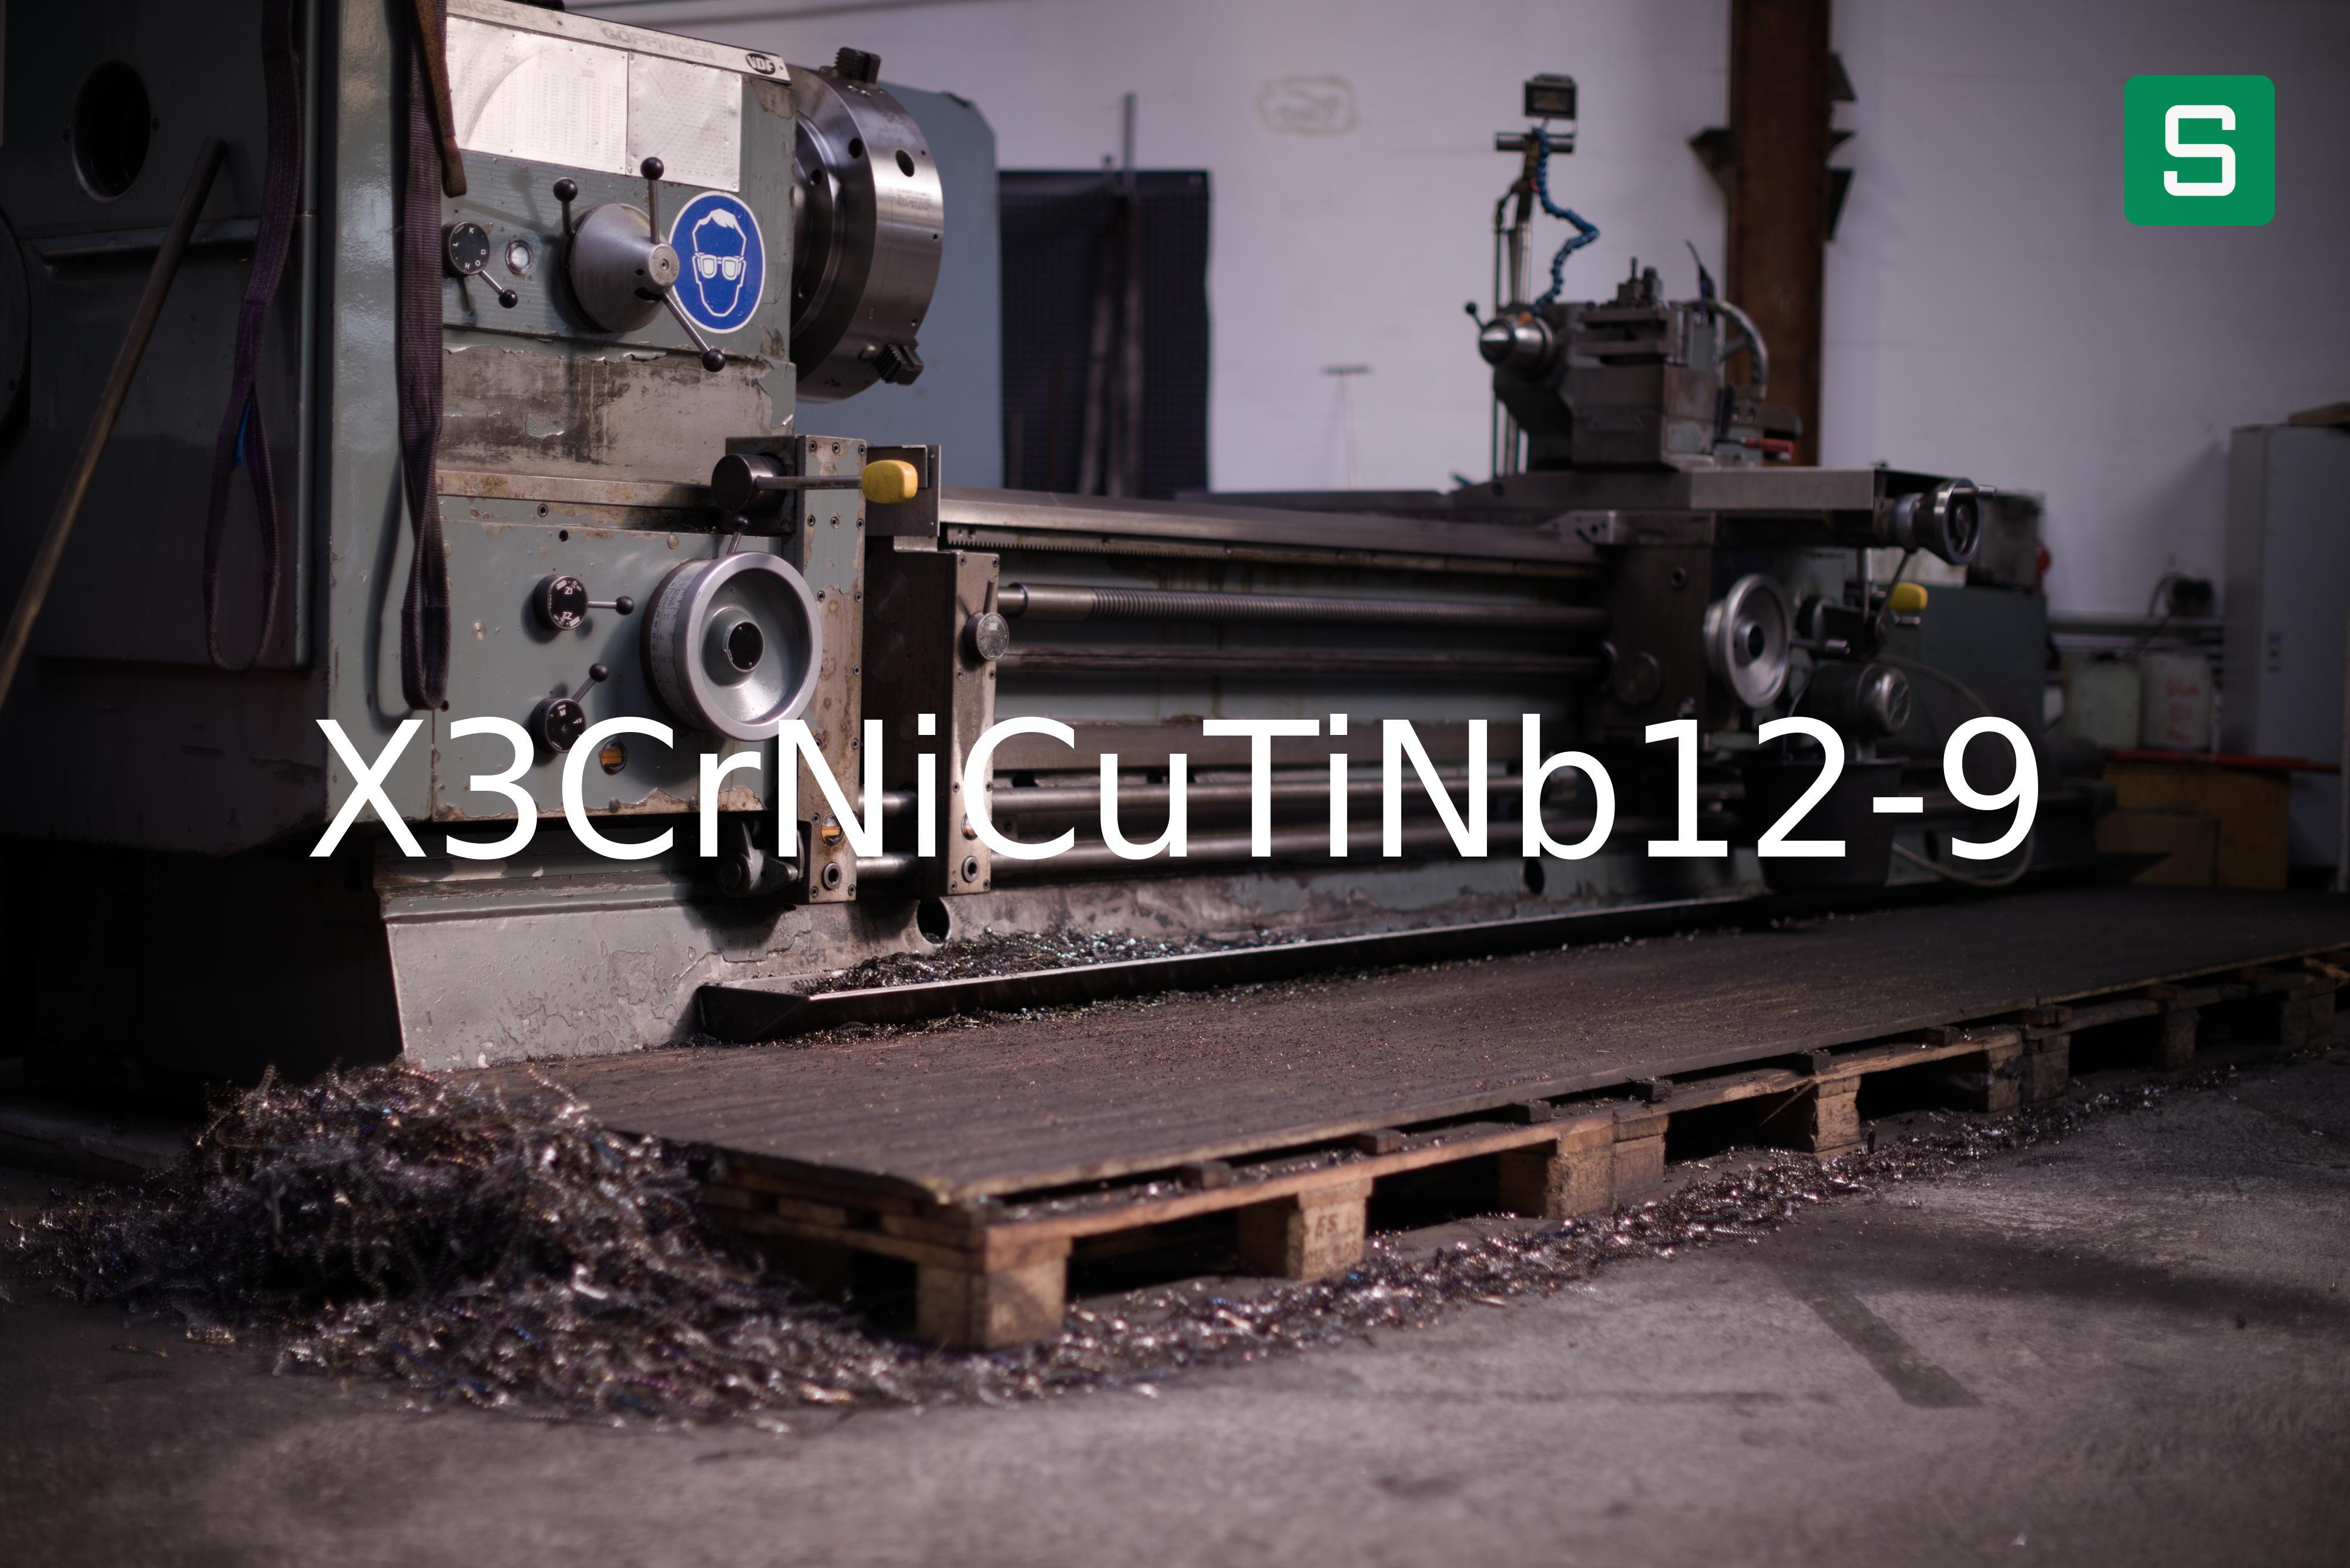 Steel Material: X3CrNiCuTiNb12-9